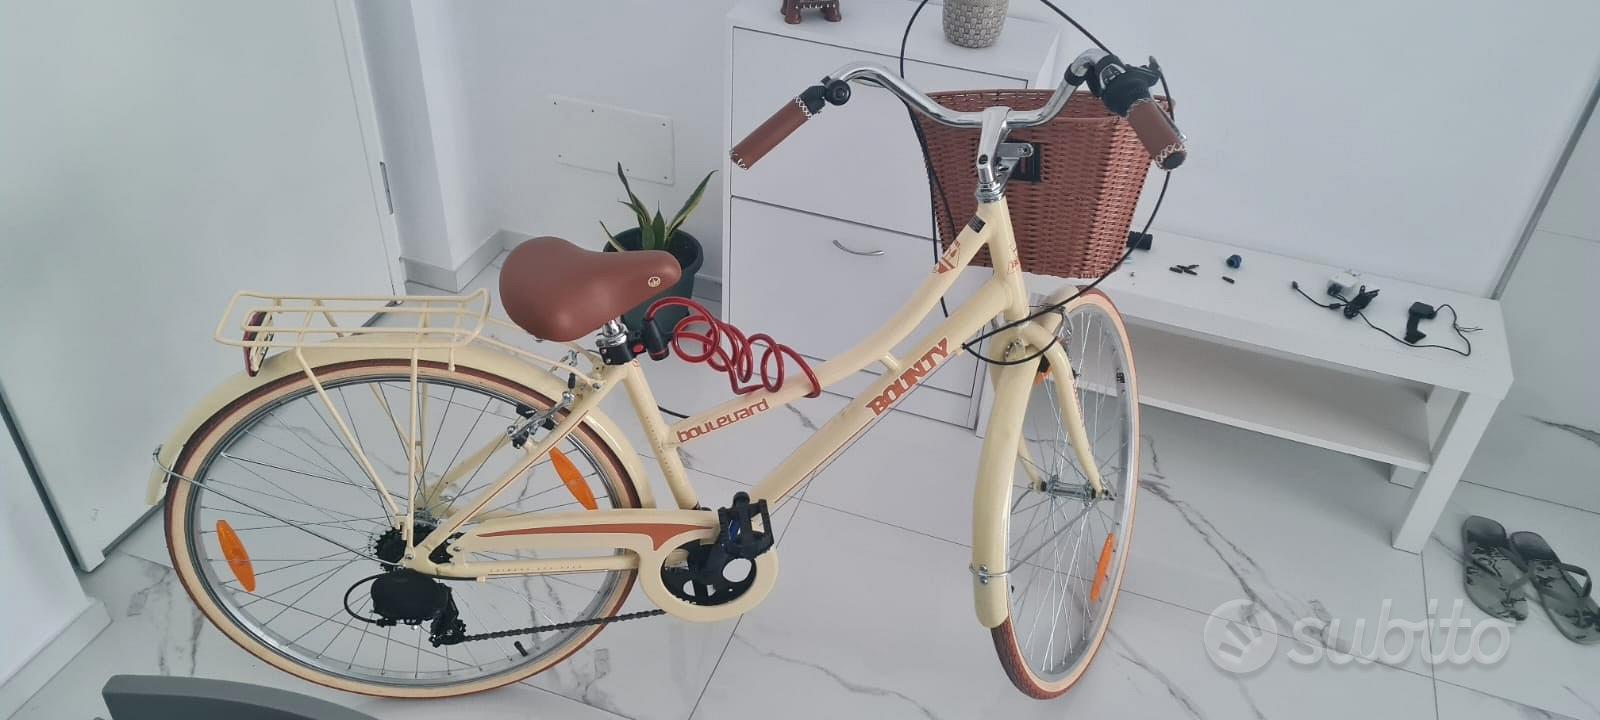 Due bici anche supporto per macchina. - Biciclette In vendita a Campobasso